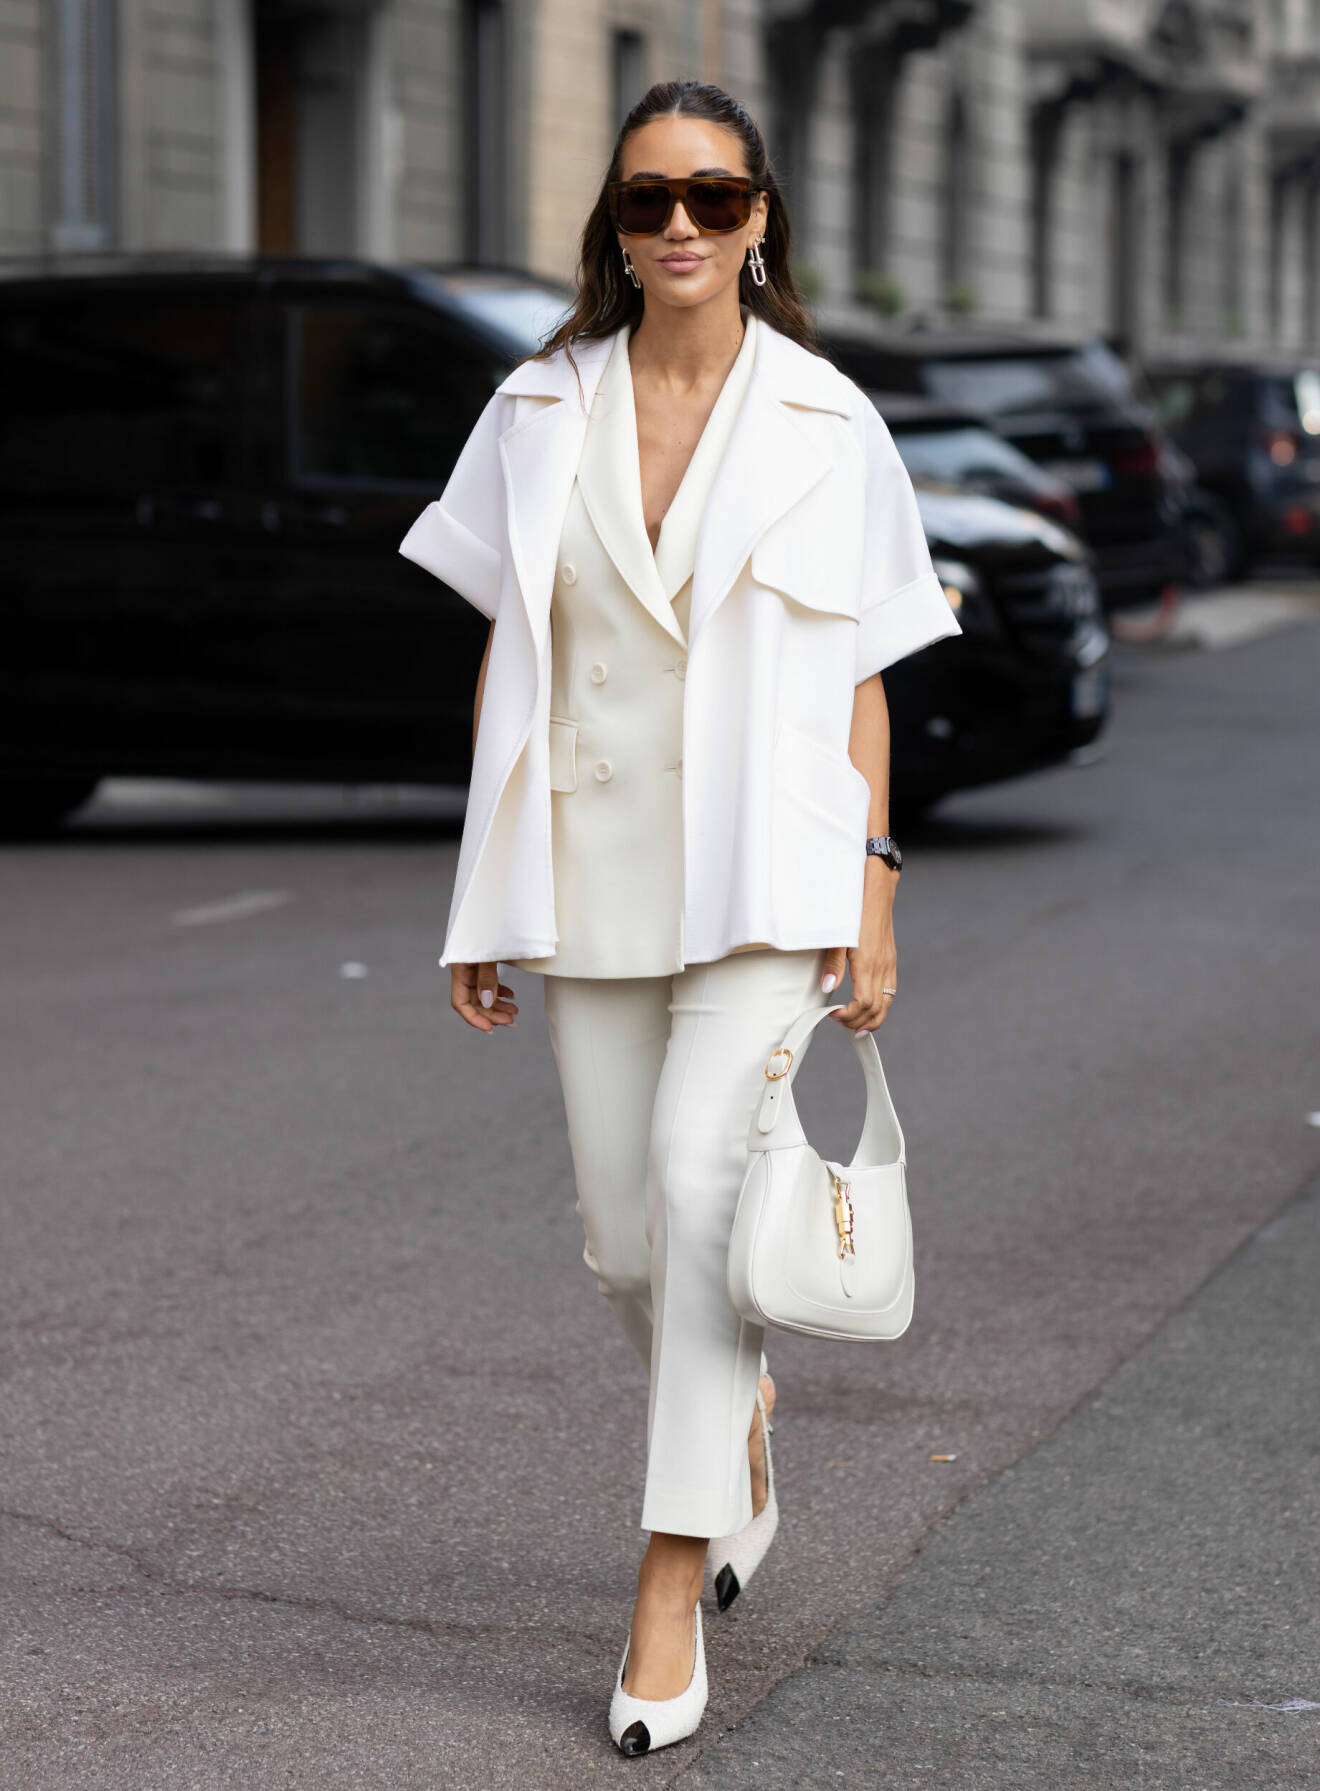 Tamara Kalinic bär lager på lager av vita plagg under modeveckan i Milano.